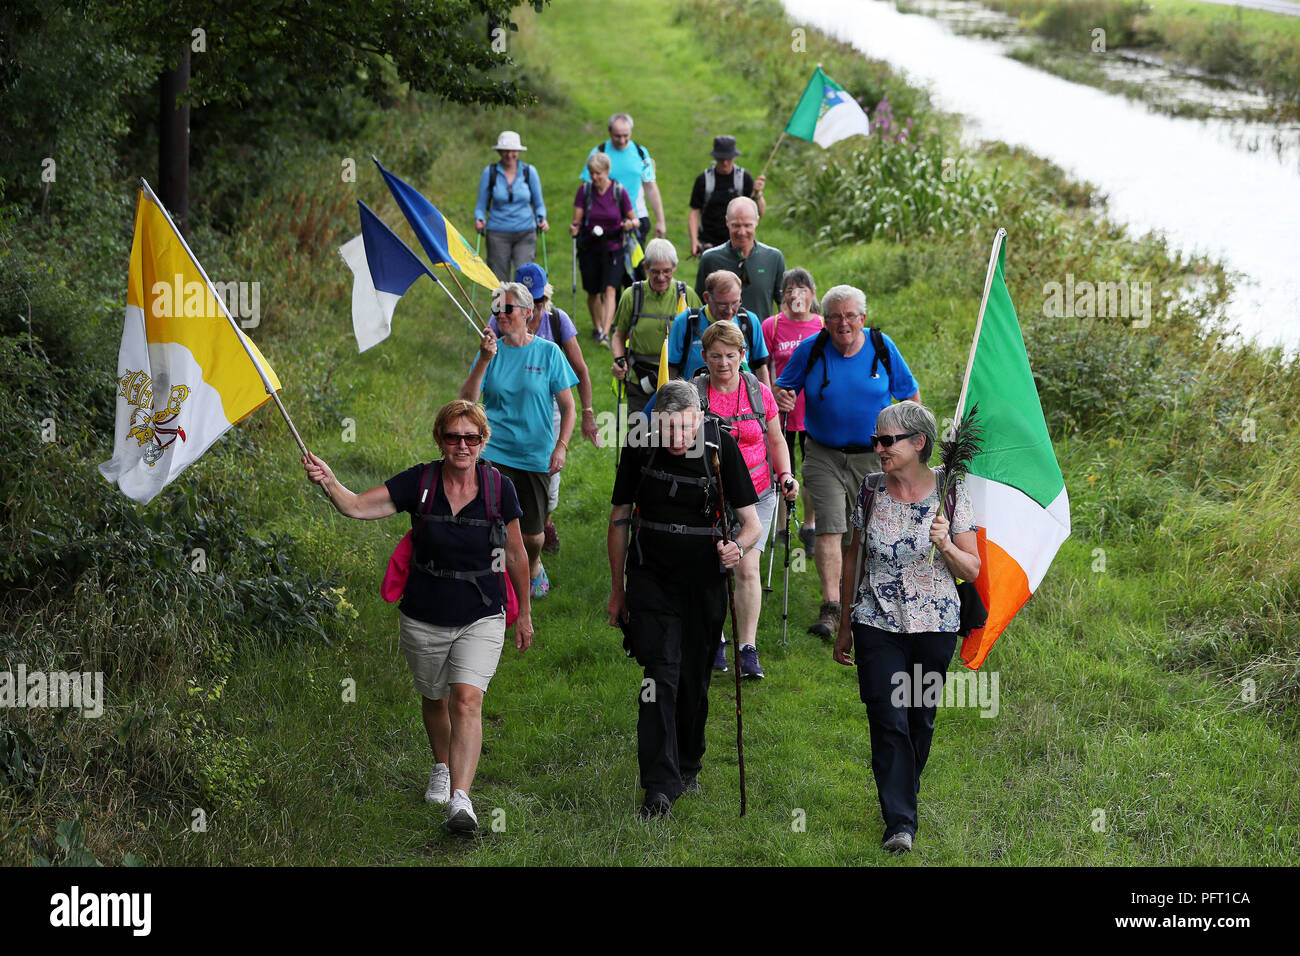 Miembros de Aonach ar Siul (Nenagh Walking Club) a pie del Grand Canal, Ballycommon, Offaly, como parte de sus 220km de caminata de 11 días que culminó en el Phoenix Park en Dublín el domingo coincidiendo con la misa Papal. Foto de stock